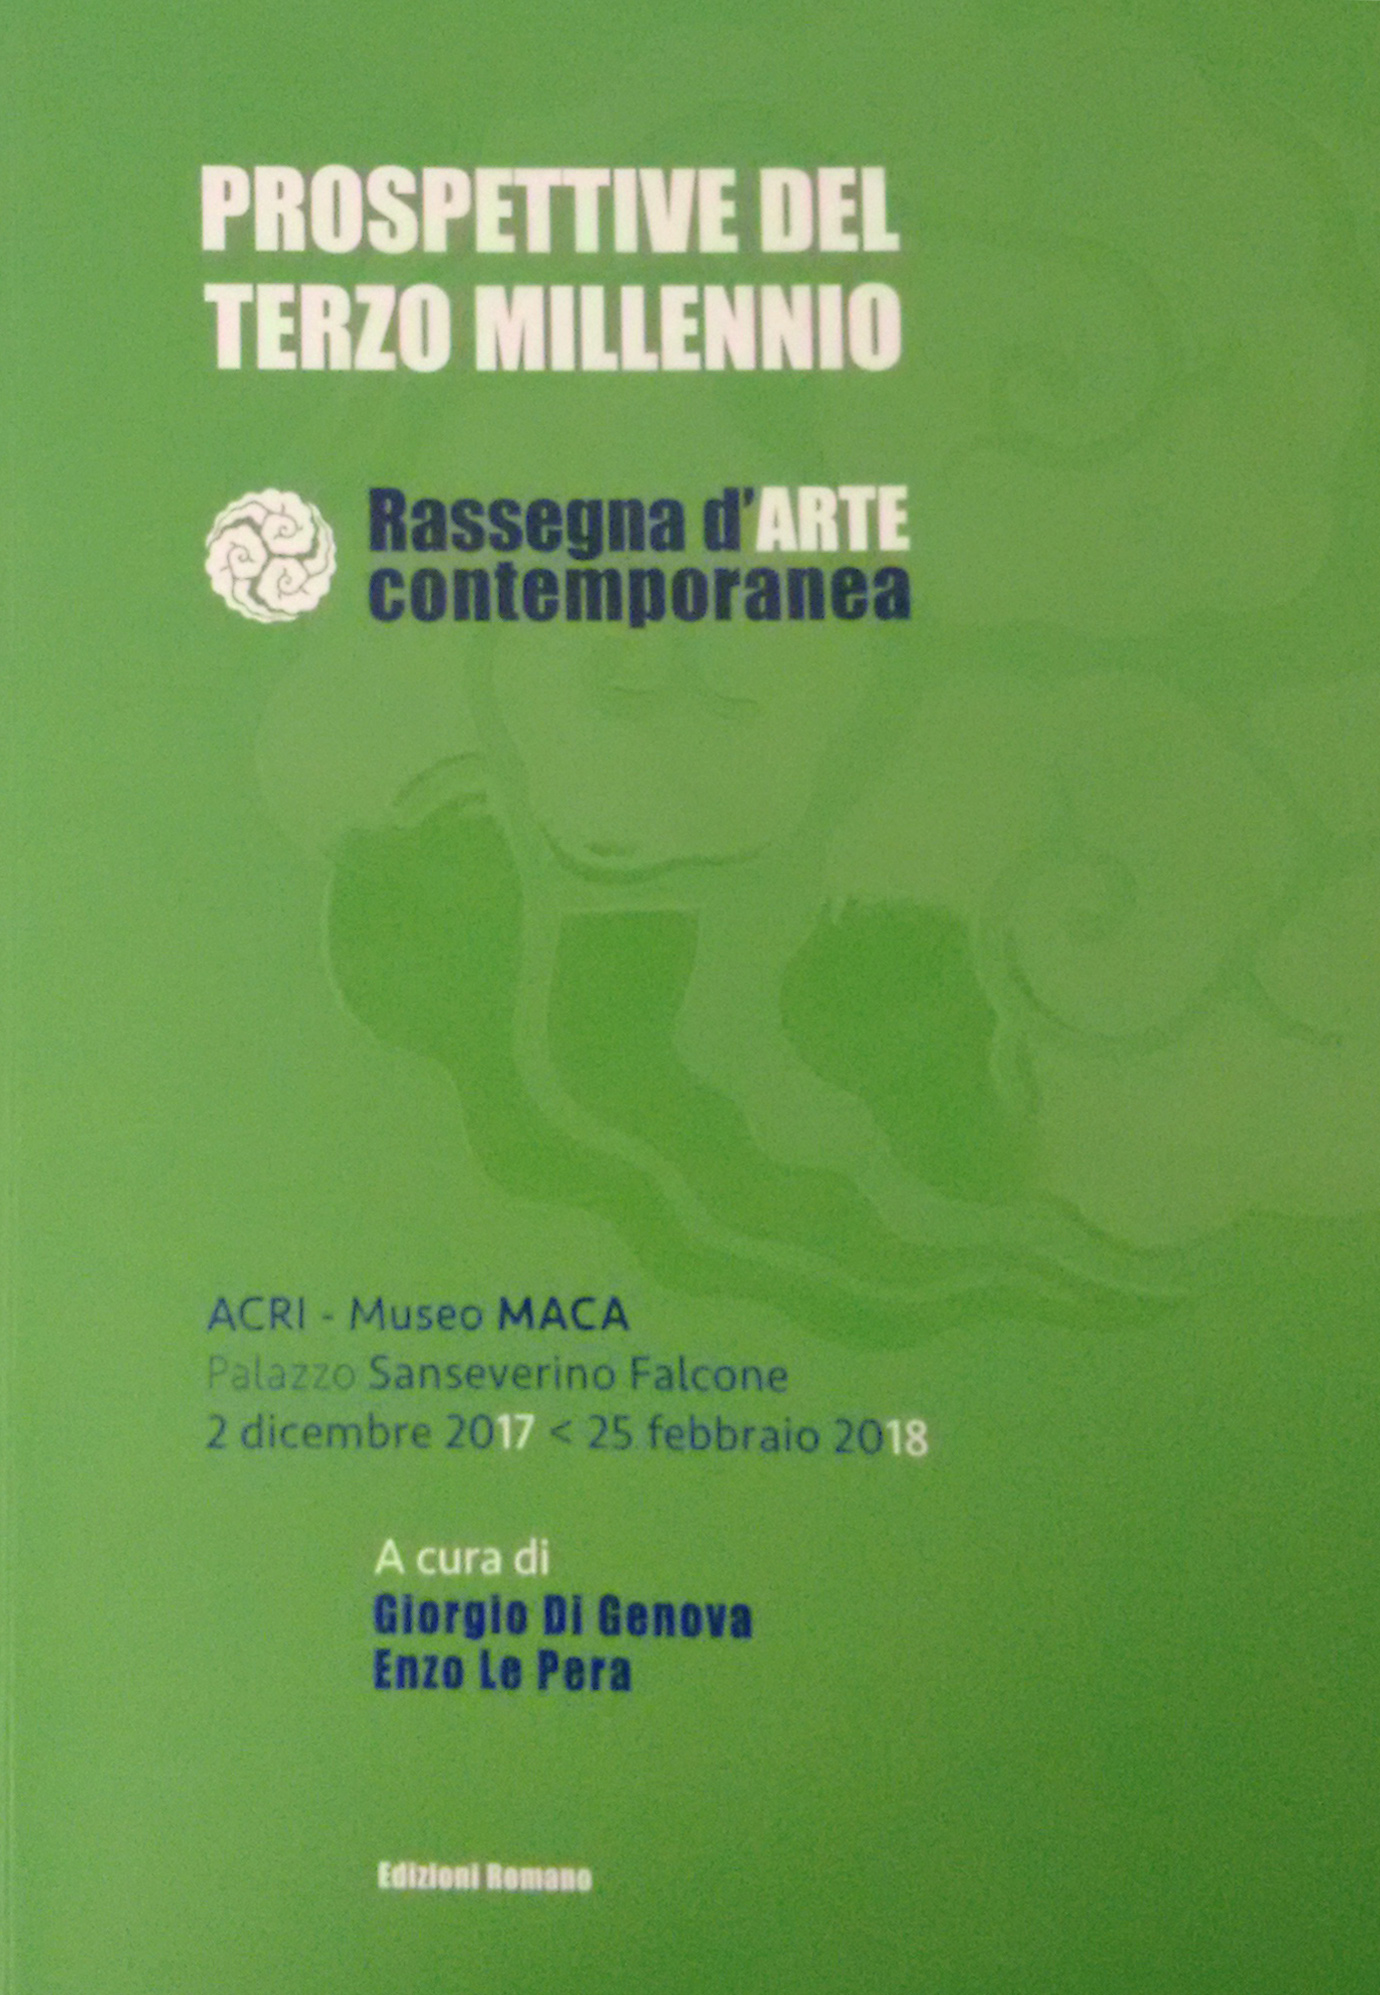 Prospettive del Terzo Millennio - Rassegna d'Arte contemporanea 2017-18|Perspectives of the third millennium - Review of Contemporary Art 2017-18